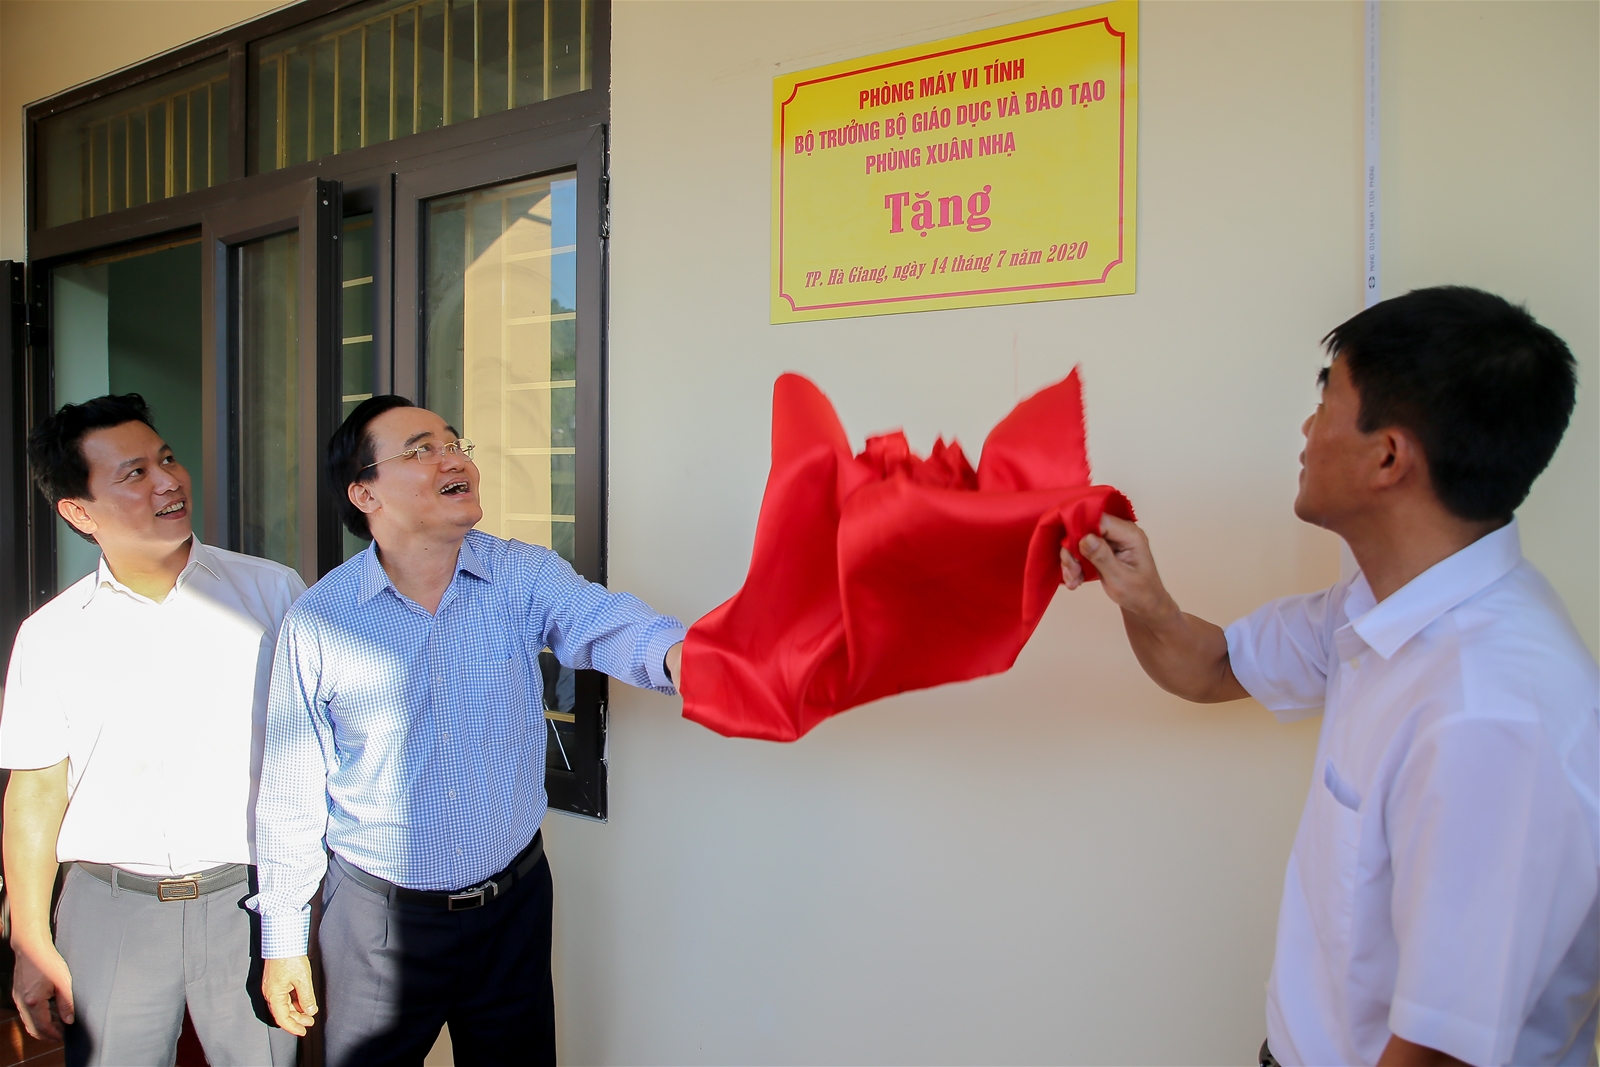 Bộ trưởng Phùng Xuân Nhạ thăm và trao tặng phòng máy vi tính cho trường THPT Lê Hồng Phong - Ảnh minh hoạ 2